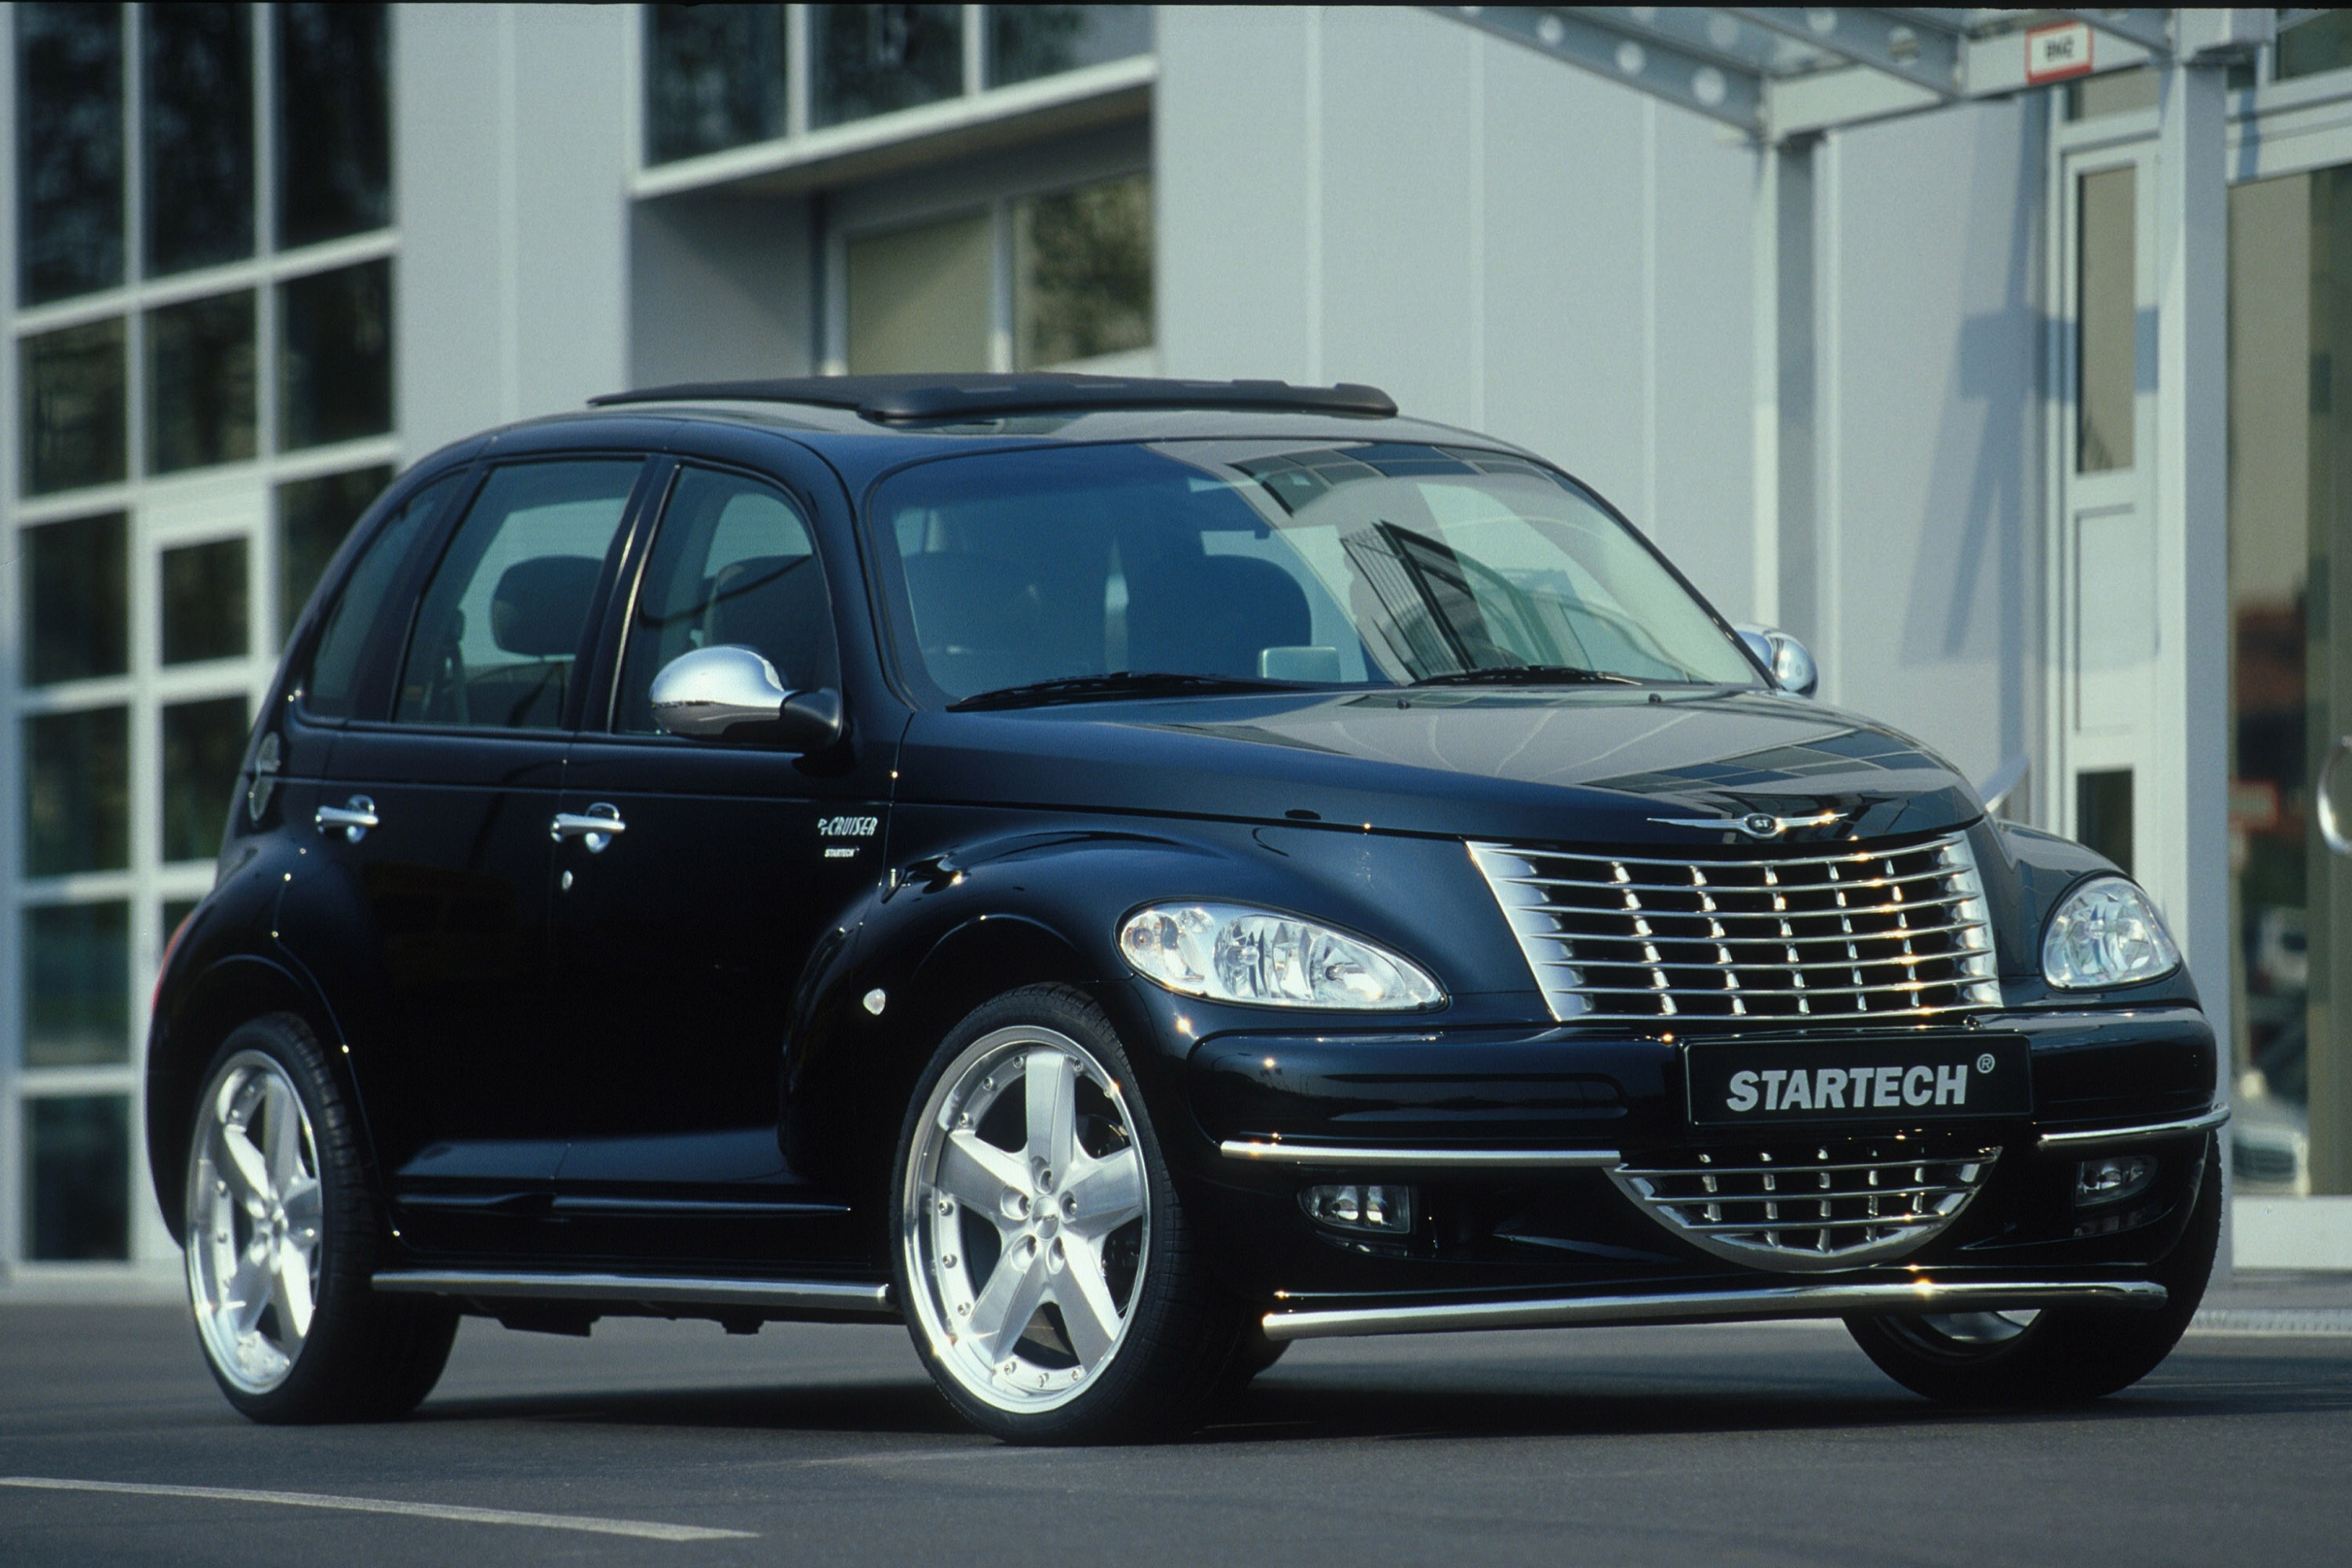 Chrysler PT Cruiser, Startech edition, 2005 model, HD picture, 3000x2000 HD Desktop